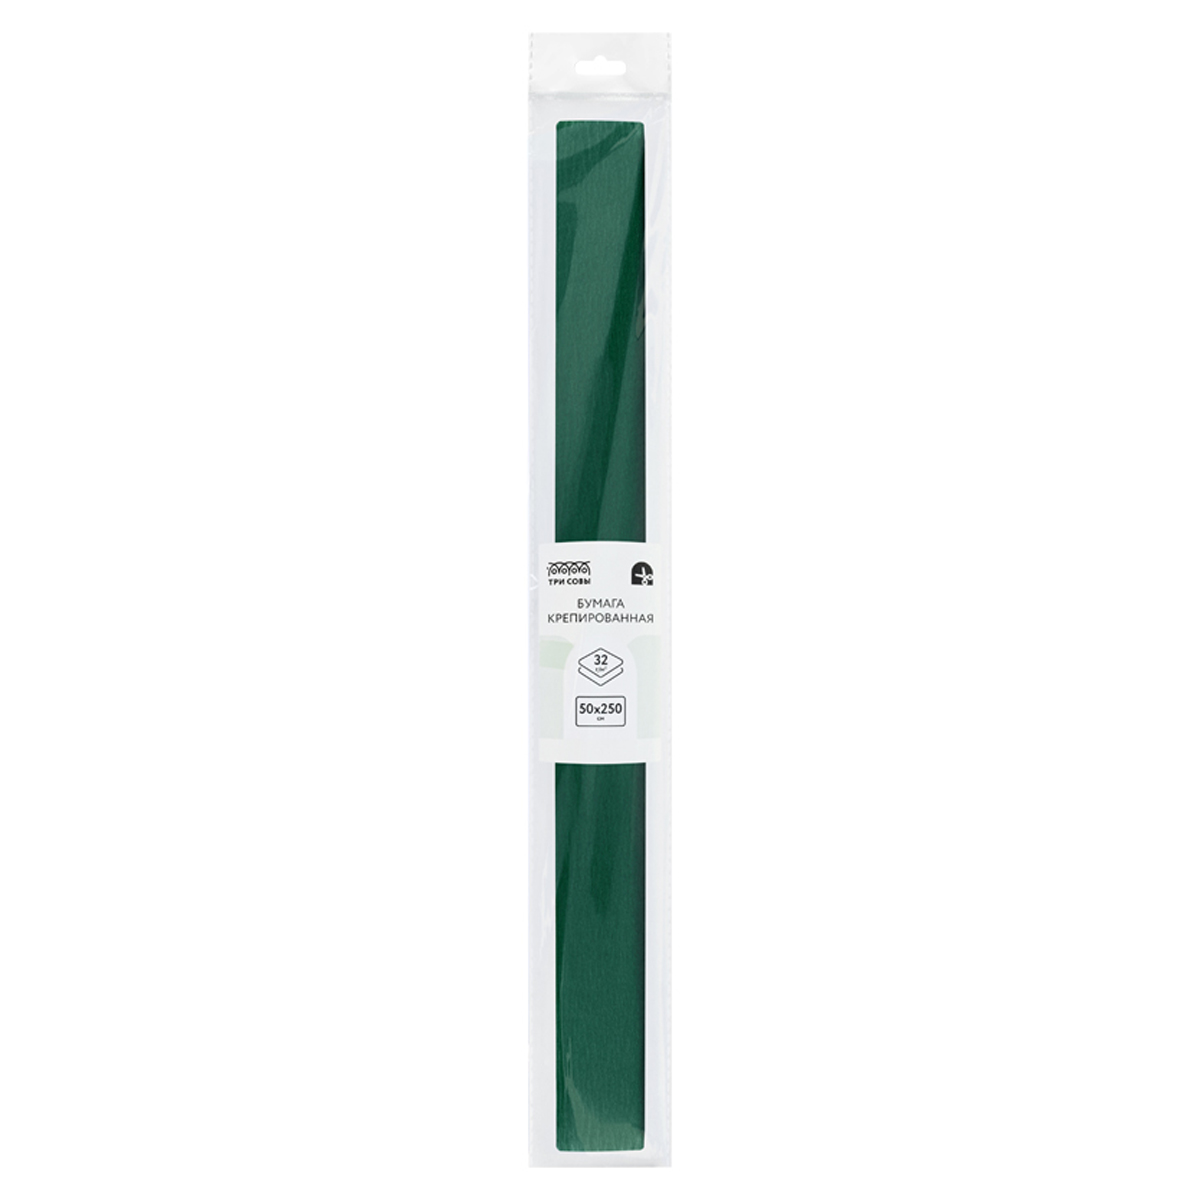 Бумага крепированная ТРИ СОВЫ, 50*250см, 32г/м2, темно-зеленая, в рулоне, пакет с европо